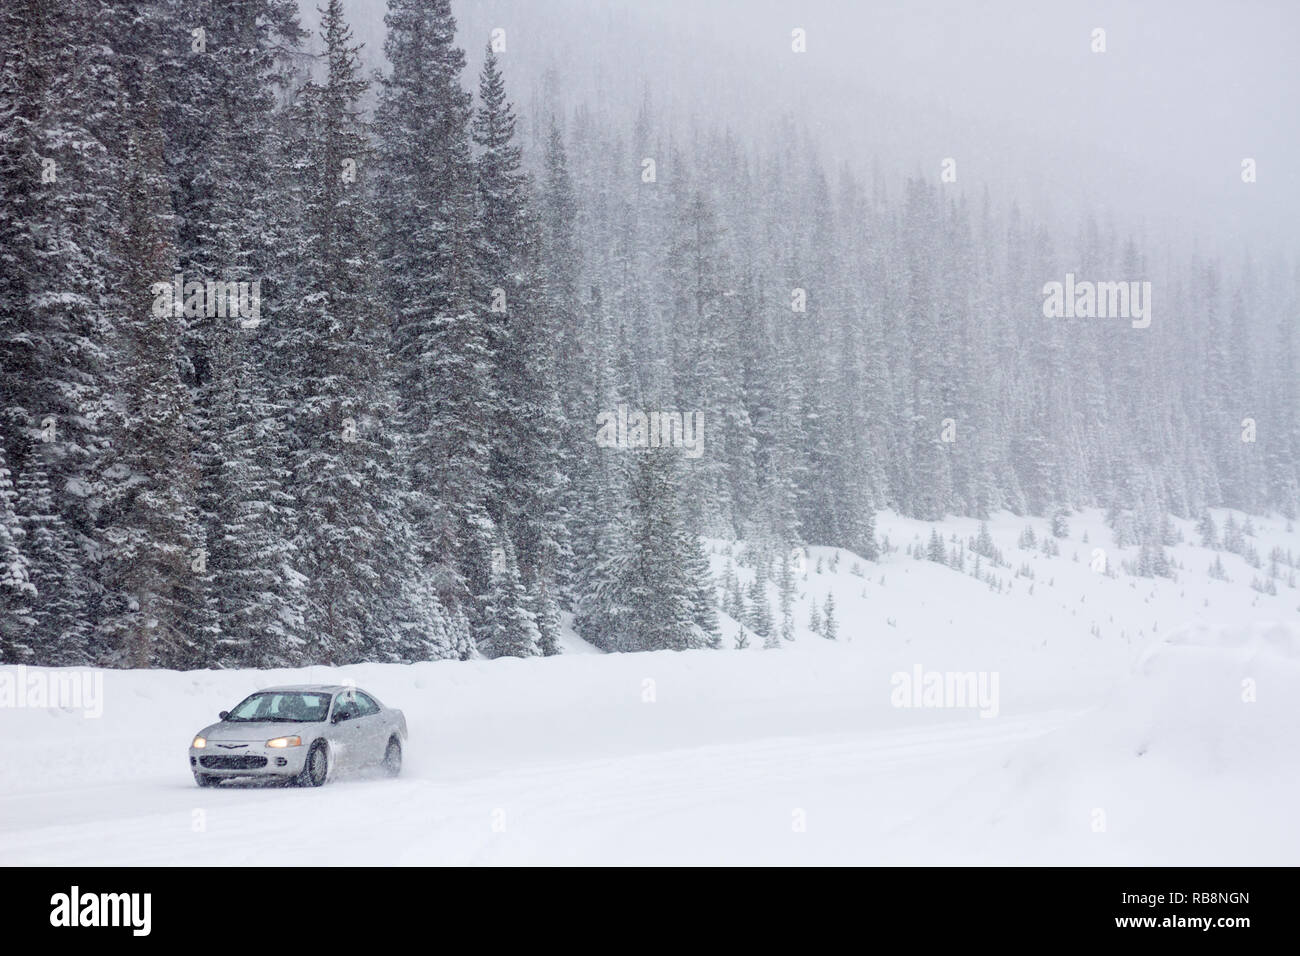 Auto reisen Schotter, Schnee, Berg Straße in Kananaskis, Alberta, Kanada. Winterreifen im Winter Wetter wünschenswert, insbesondere in abgelegenen Gebieten. Stockfoto